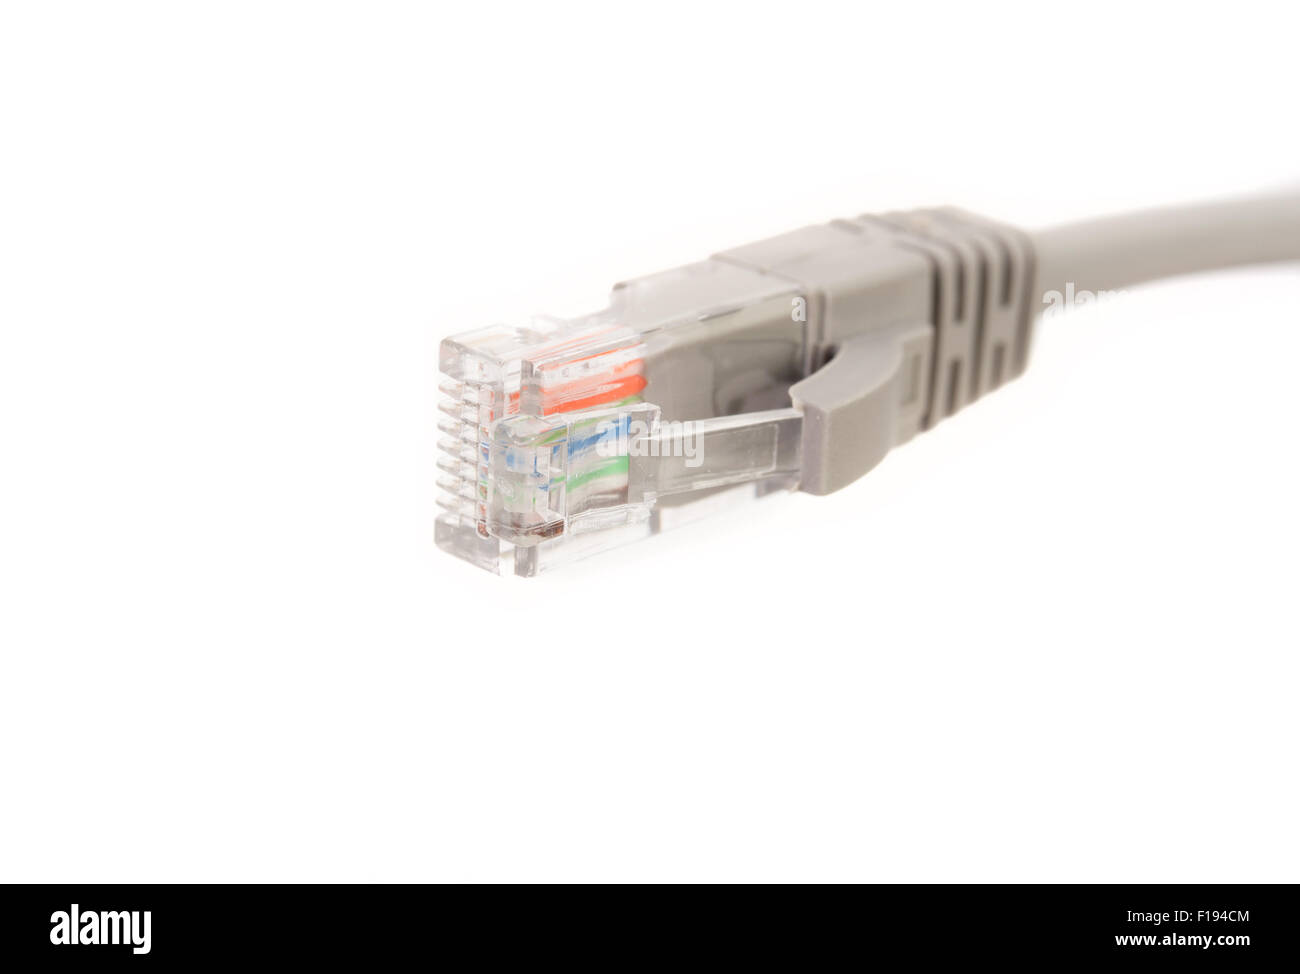 Câble LAN / cord, CAT5e avec connecteurs RJ45 pour réseau informatique reliant tête isolé sur fond blanc Banque D'Images